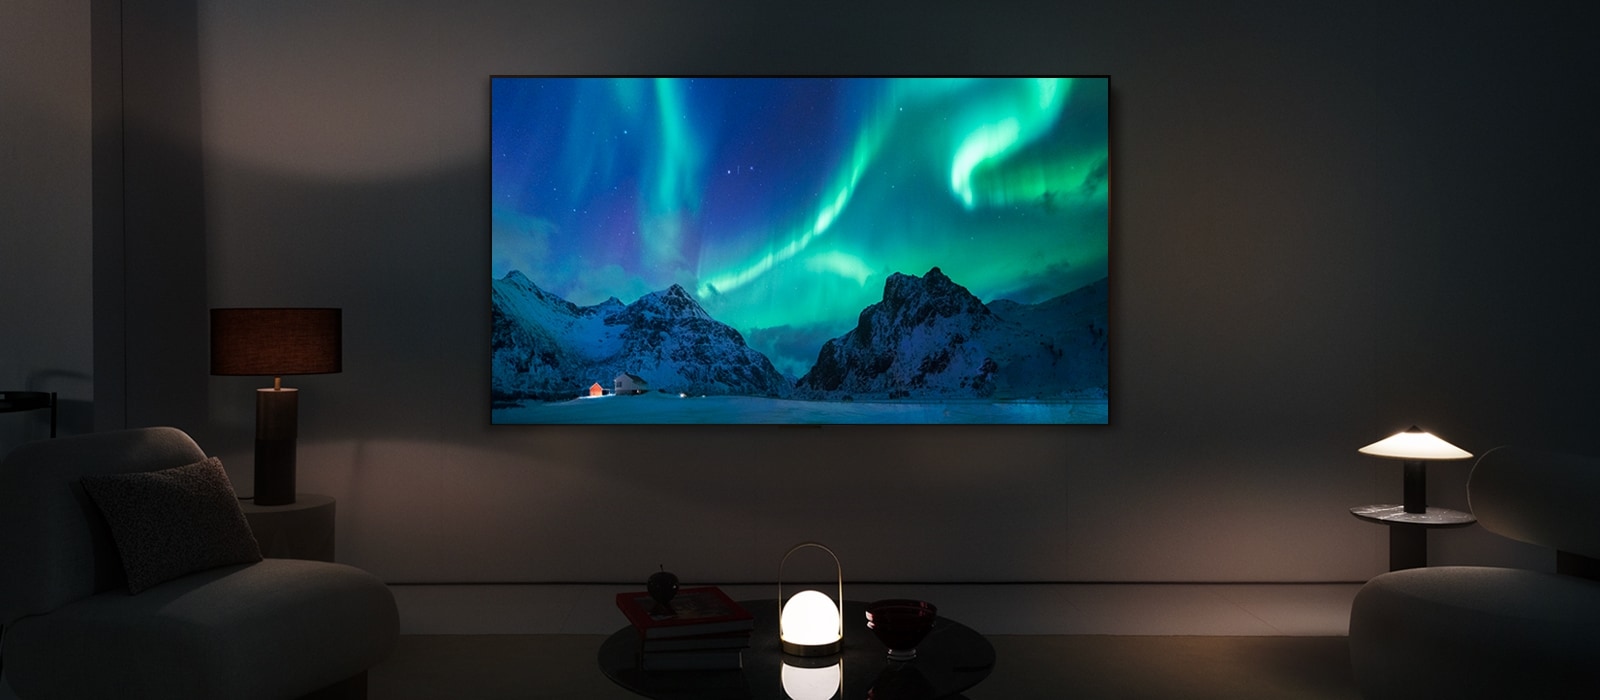 Le téléviseur OLED de LG dans une pièce moderne la nuit. Des aurores boréales s’affichent à l’écran avec les niveaux de luminosité idéaux.